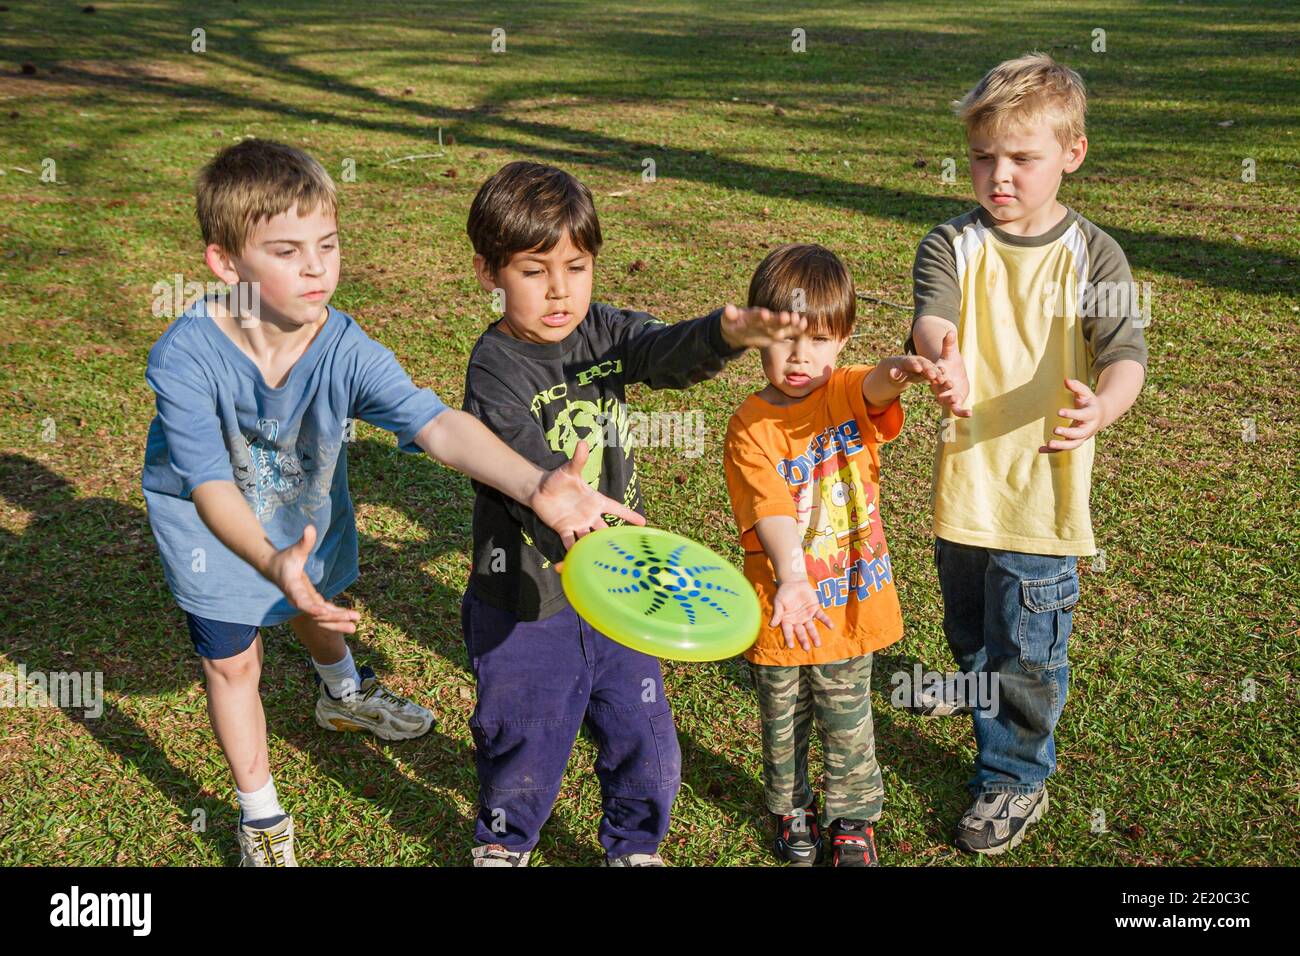 Alabama Dothan park Hispanic boys catching Frisbee, Stock Photo